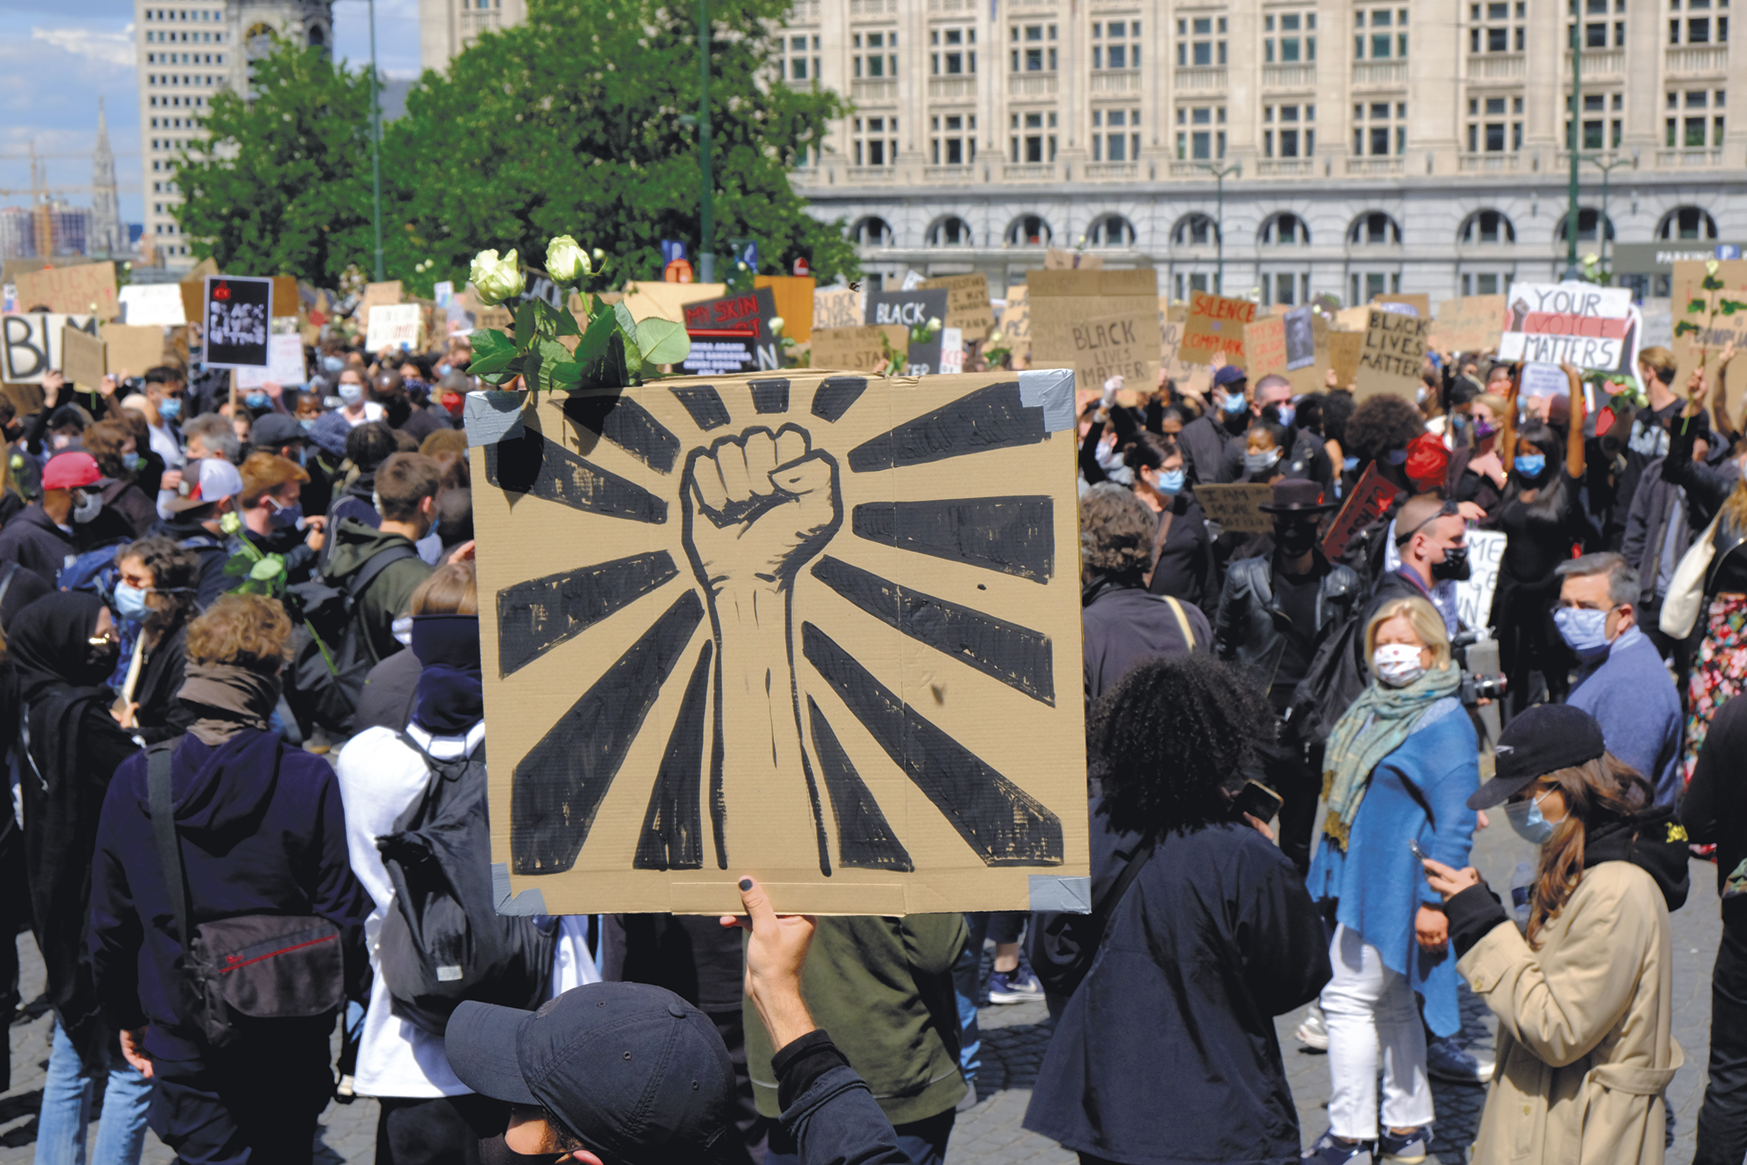 Fotografia. Manifestação com diversas pessoas, com destaque para um cartaz com um punho fechado. Ao fundo, árvores e construções.